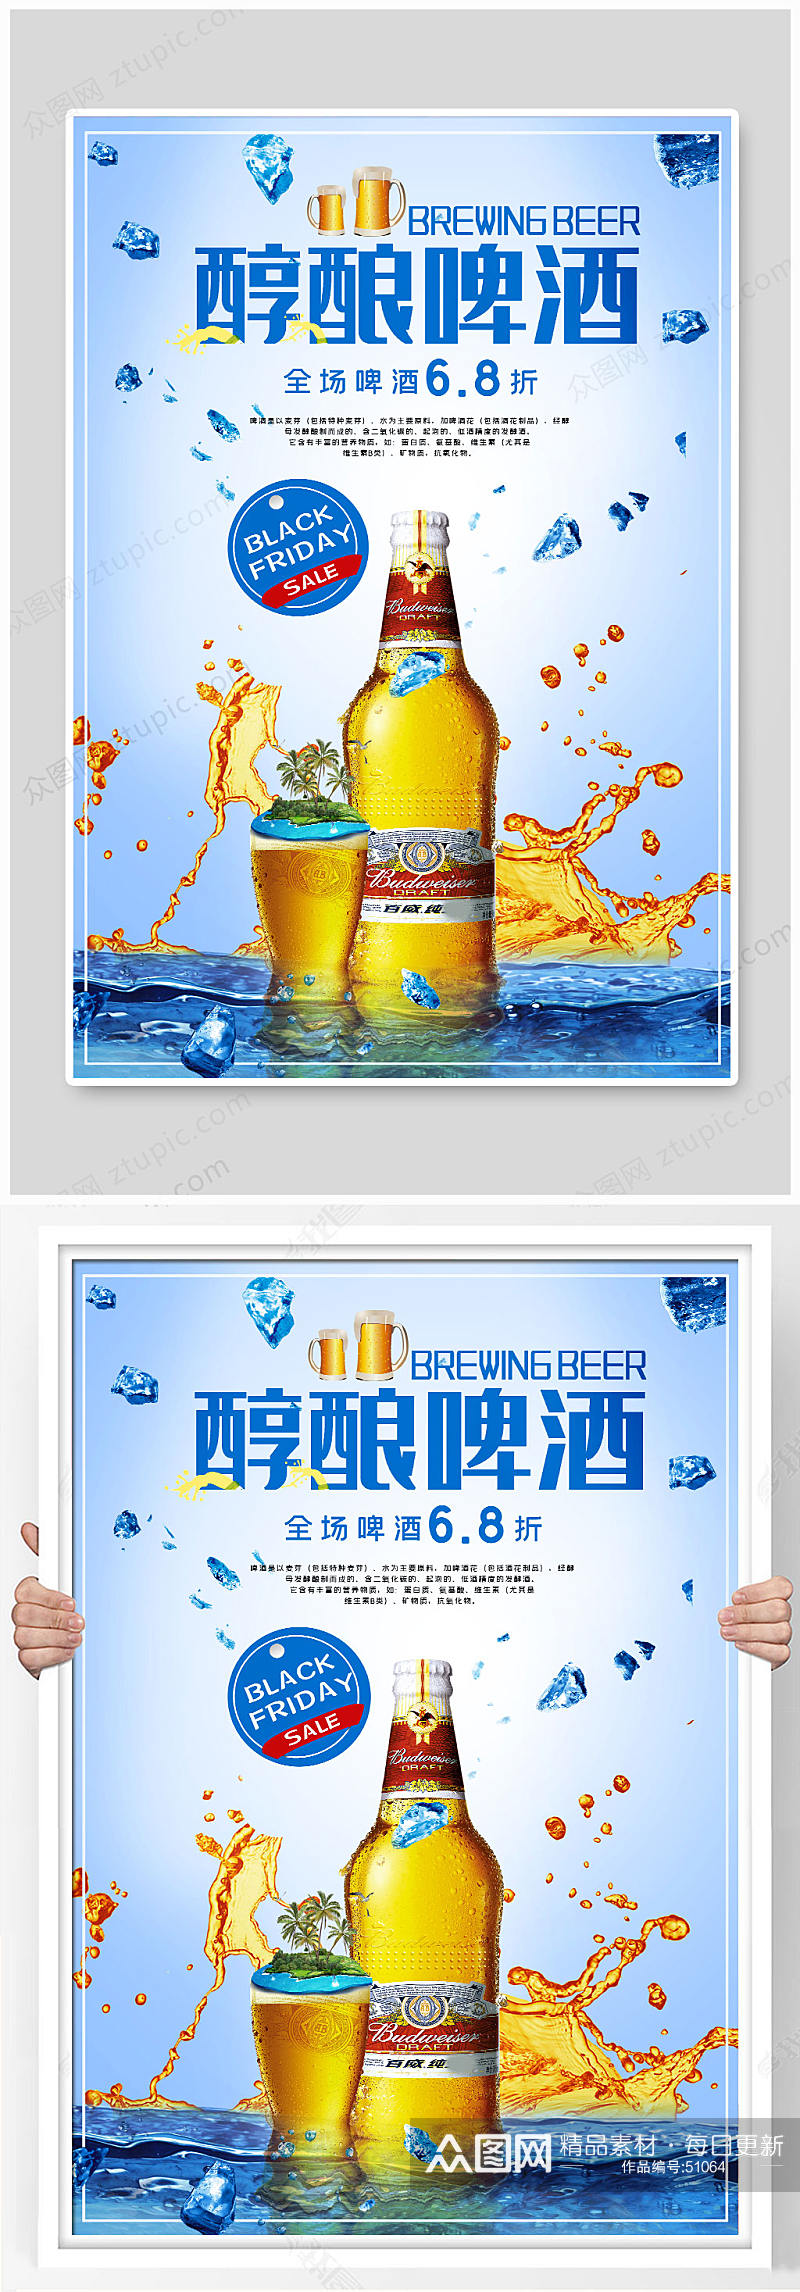 精装醇酿啤酒海报设计素材